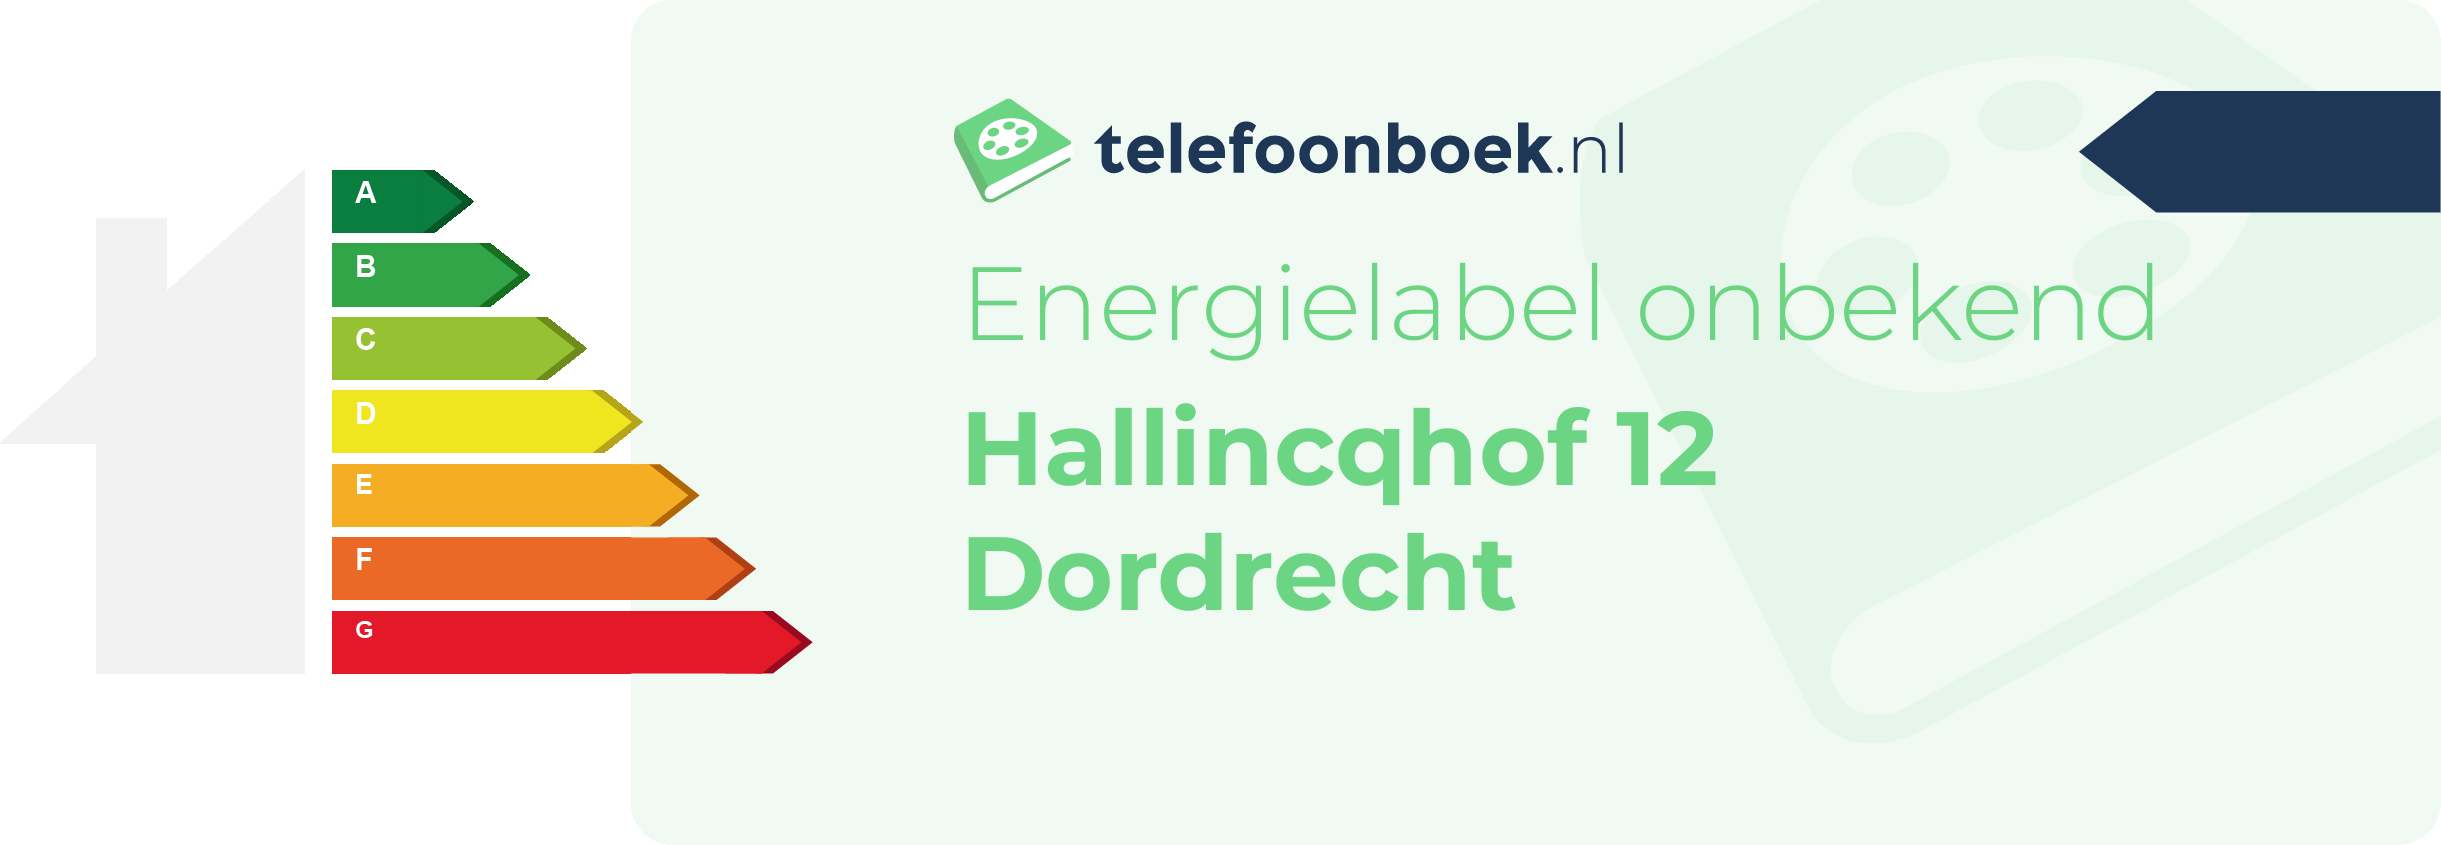 Energielabel Hallincqhof 12 Dordrecht